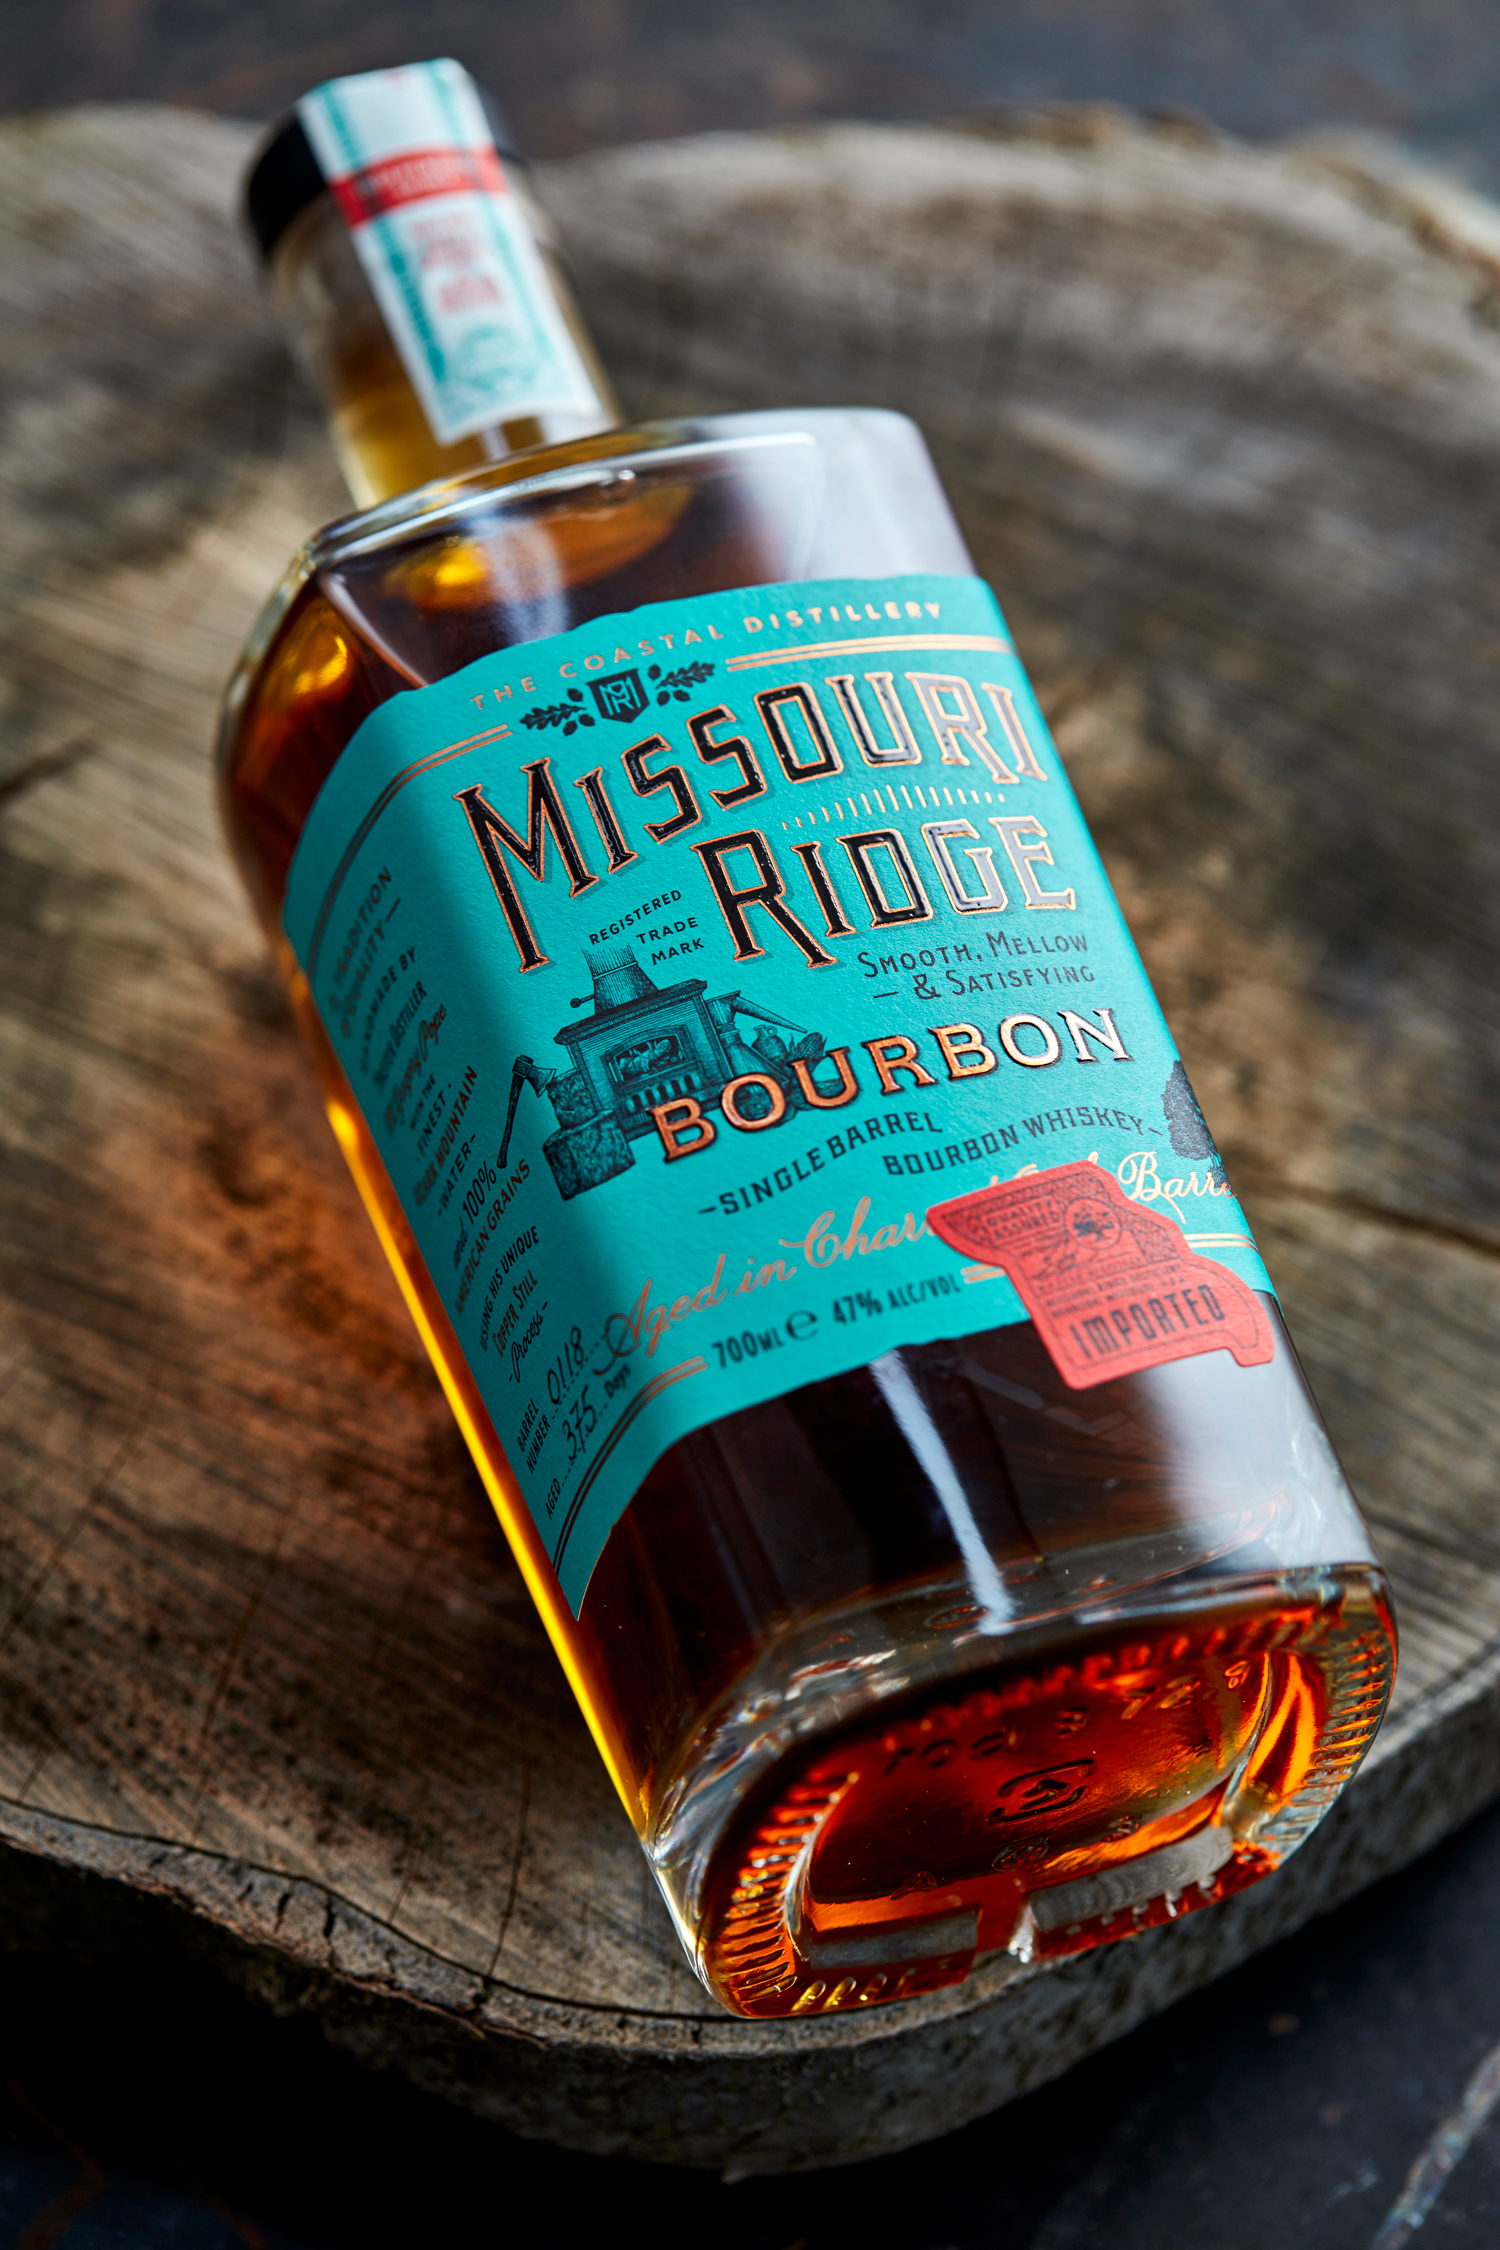 Bottle design for Missouri Ridge Bourbon